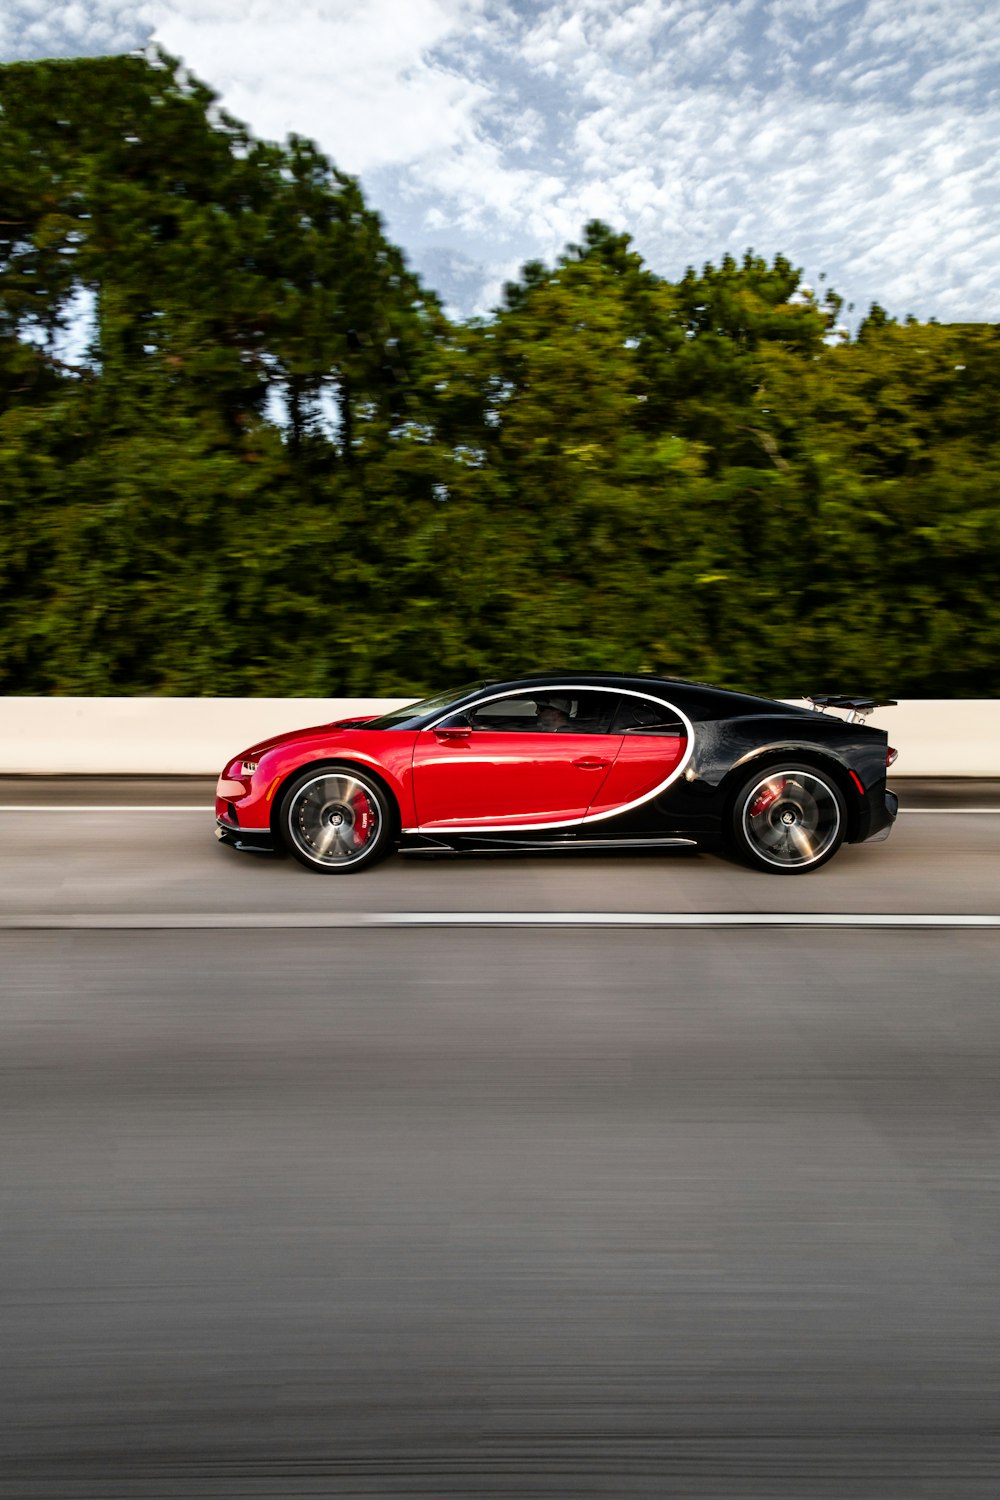 Une Bugatti rouge et noire roulant sur la route